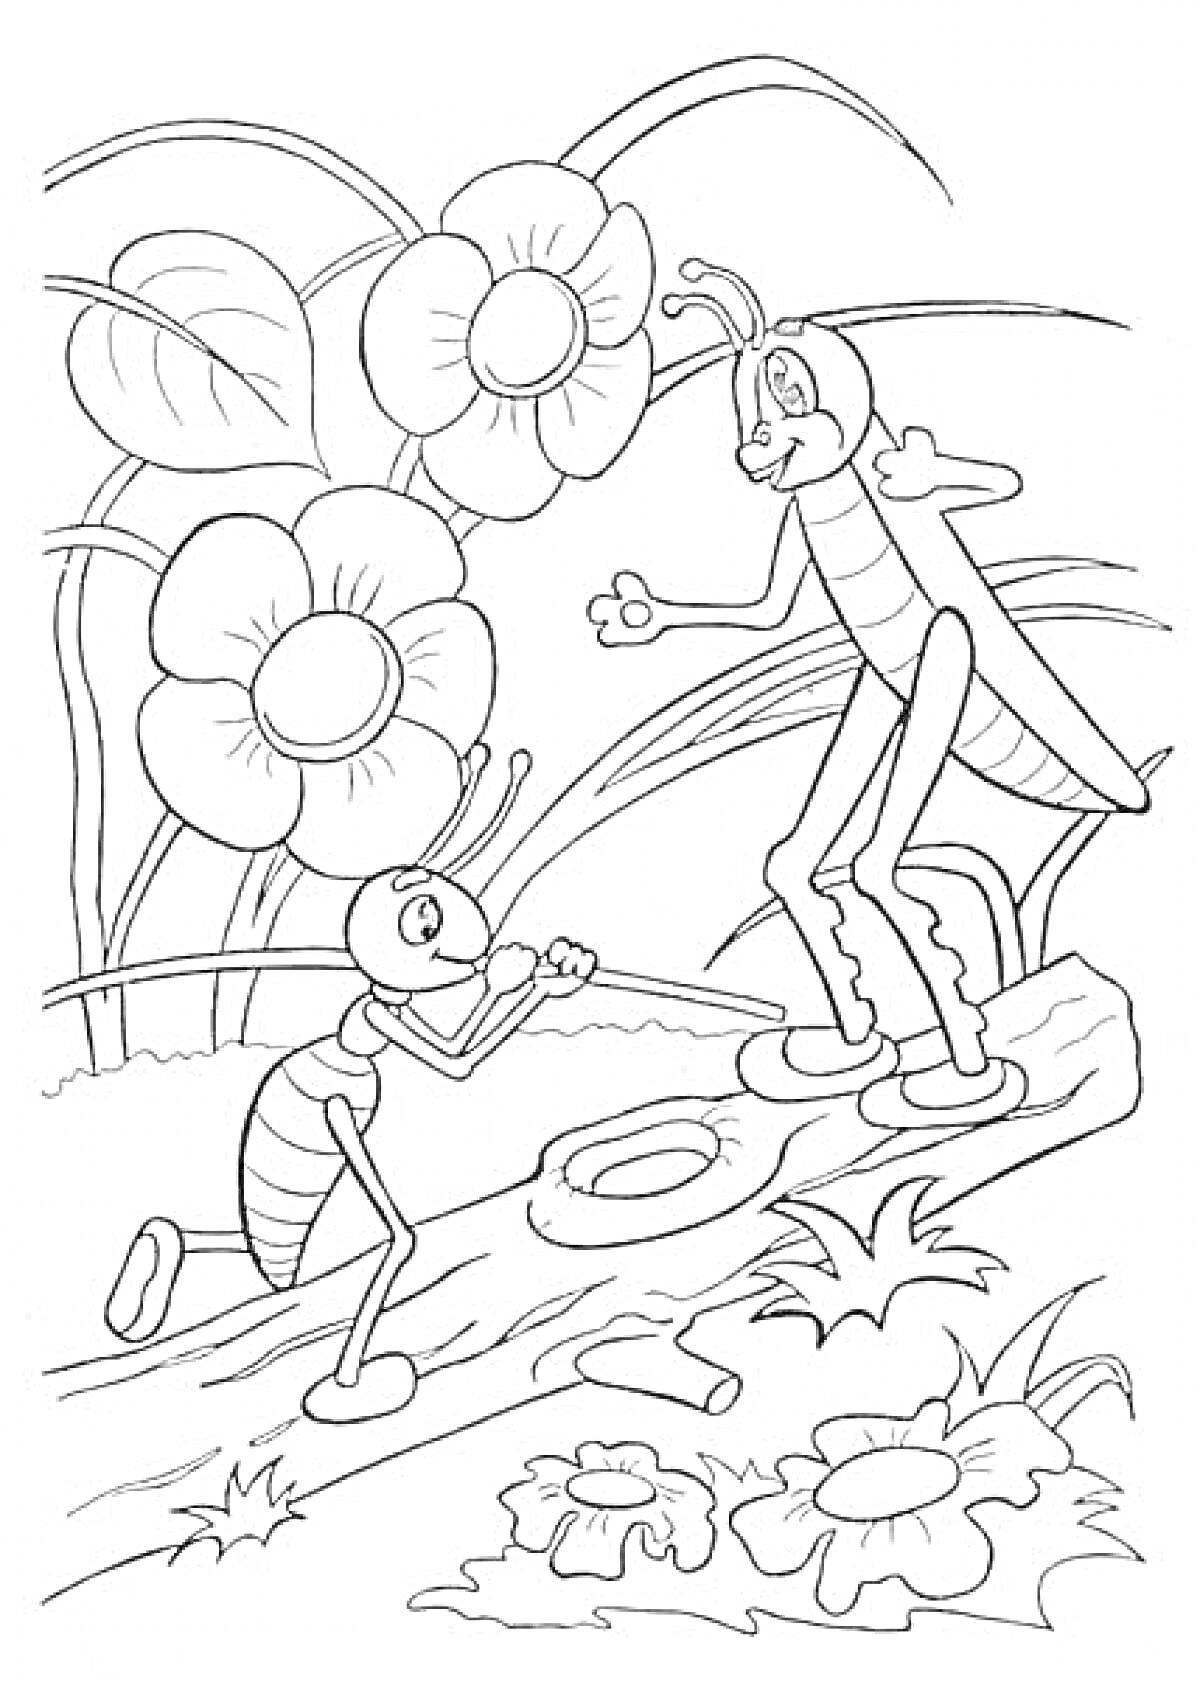 Раскраска Муравей и Кузнечик на фоне цветов и листьев